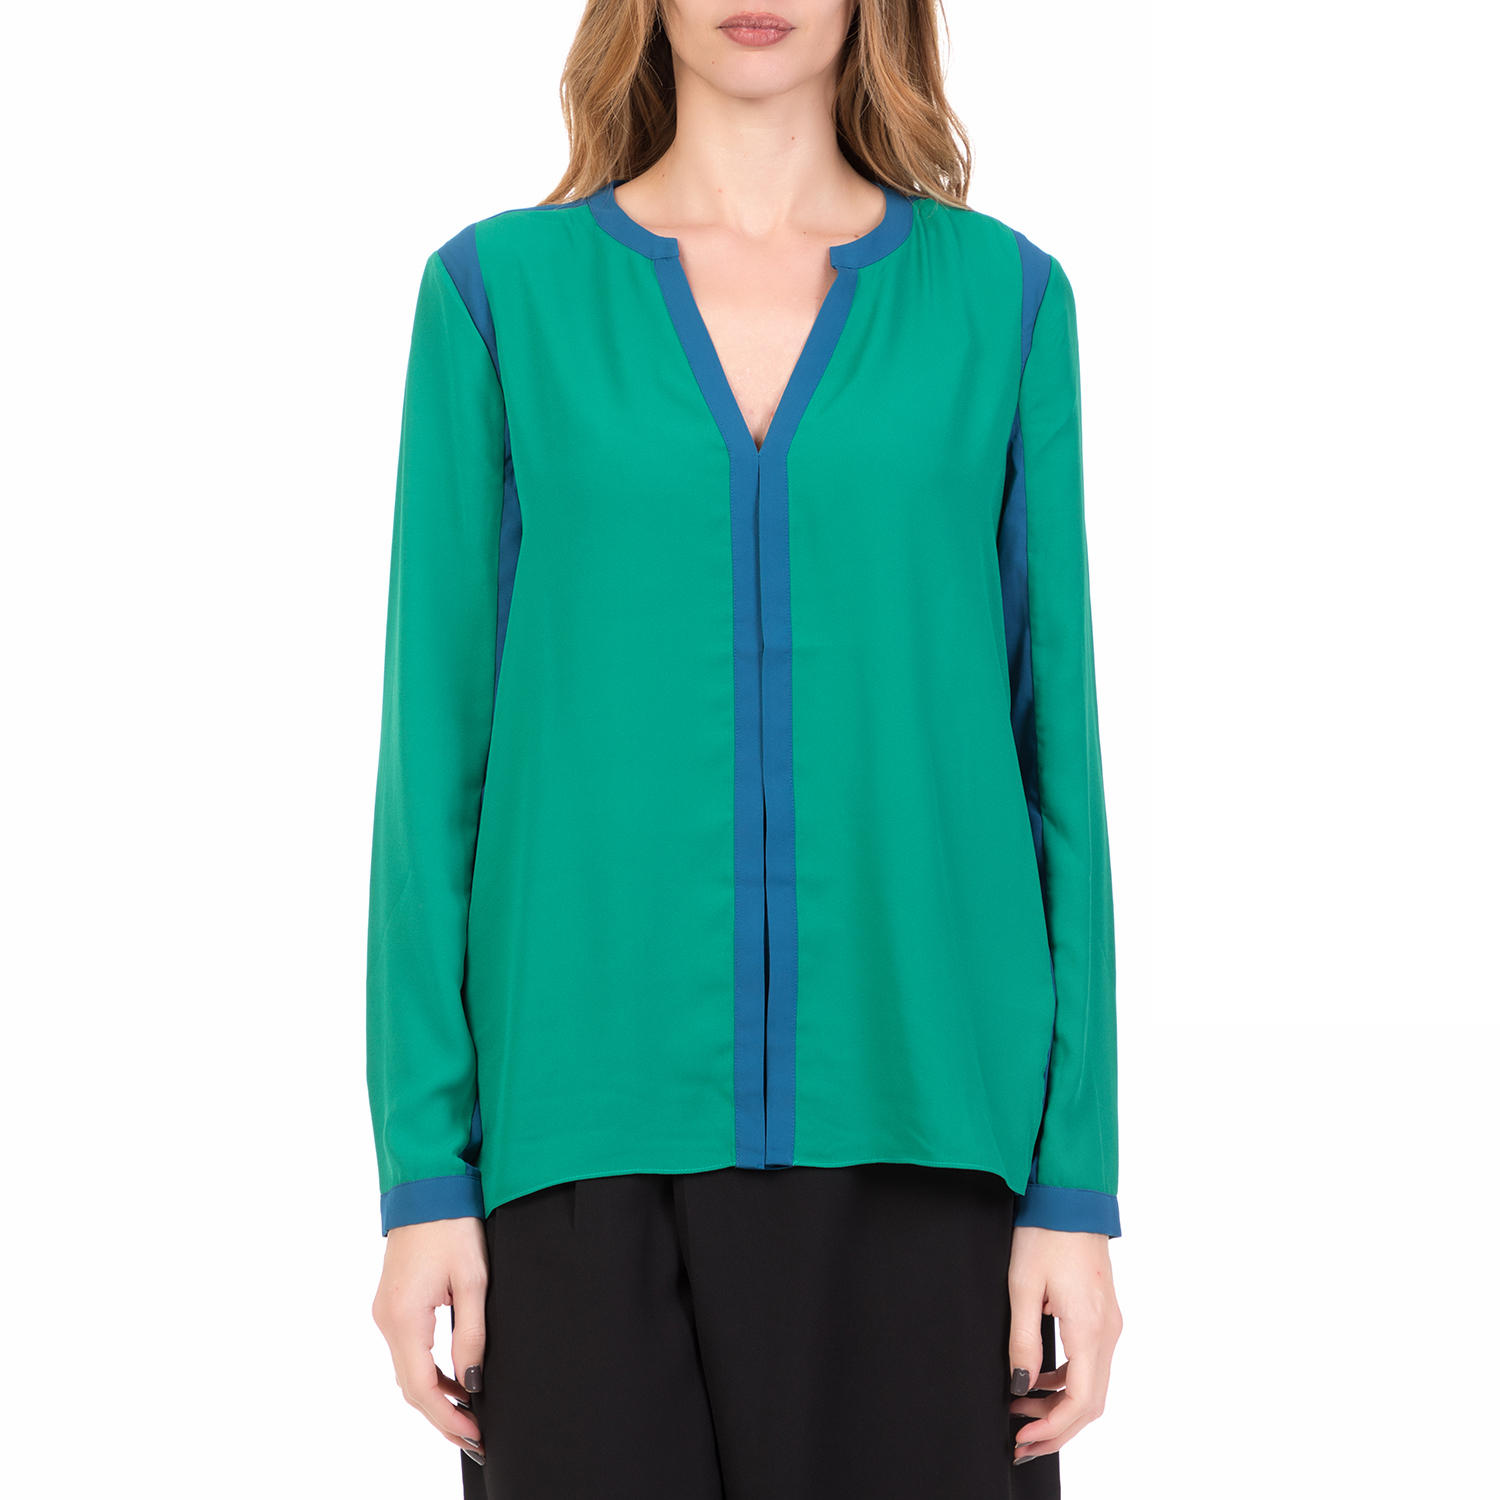 Γυναικεία/Ρούχα/Μπλούζες/Μακρυμάνικες SILVIAN HEACH - Γυναικεία μακρυμάνικη μπλούζα ABANCAY SILVIAN HEACH πράσινη-μπλε